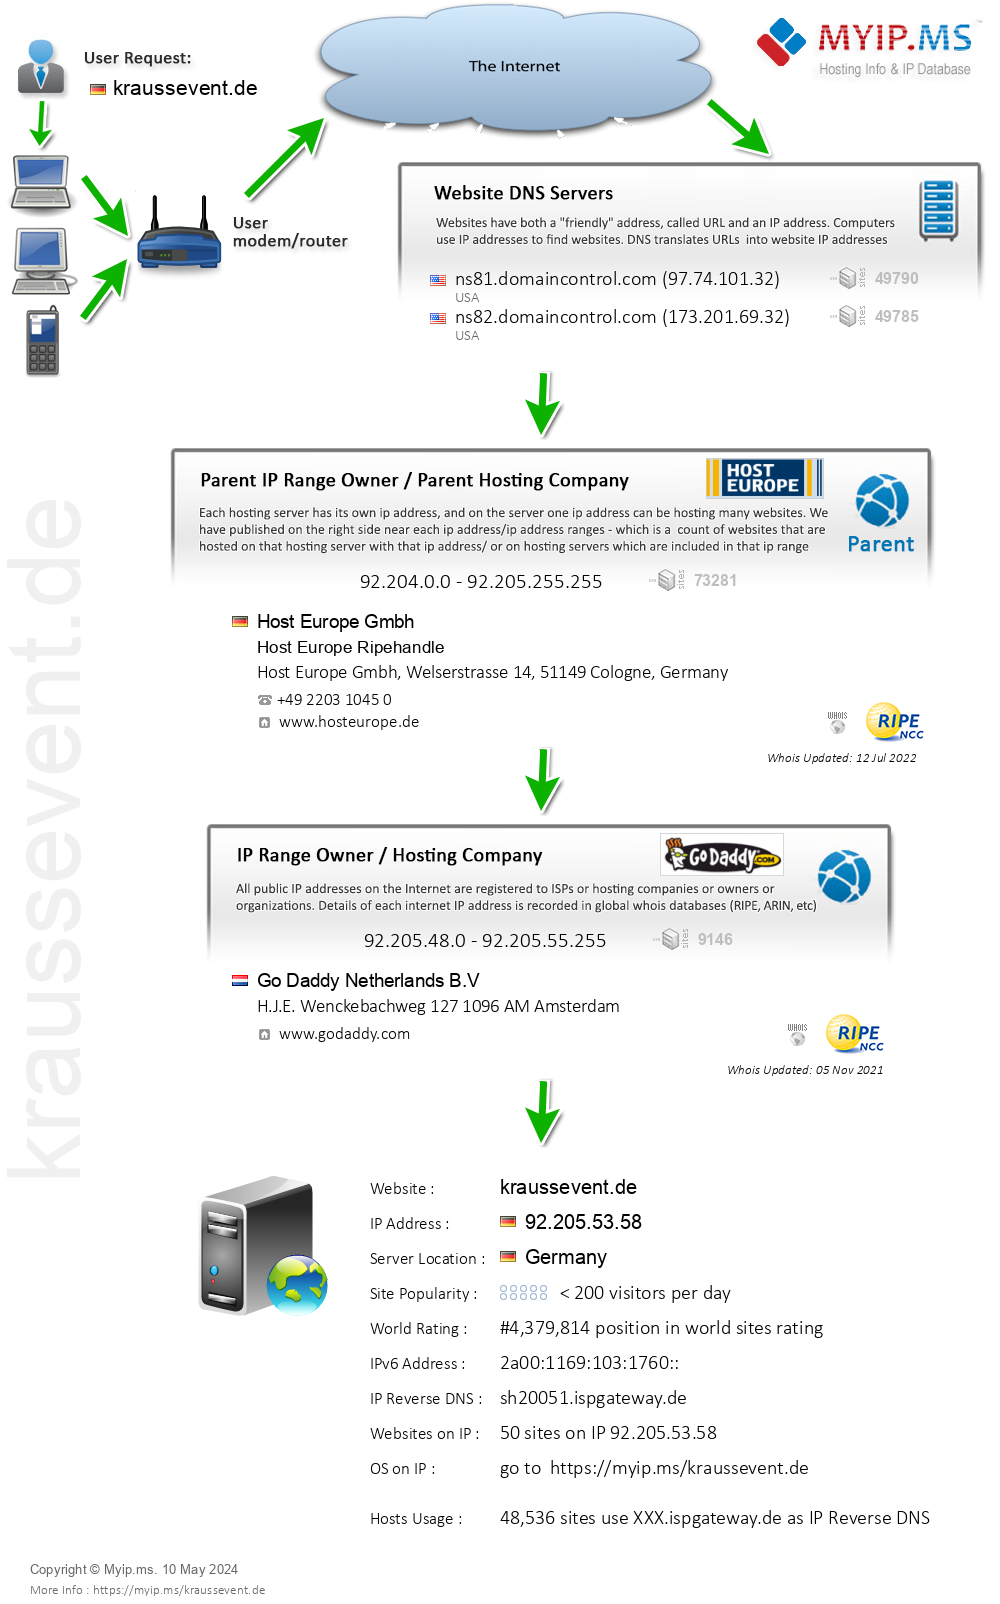 Kraussevent.de - Website Hosting Visual IP Diagram